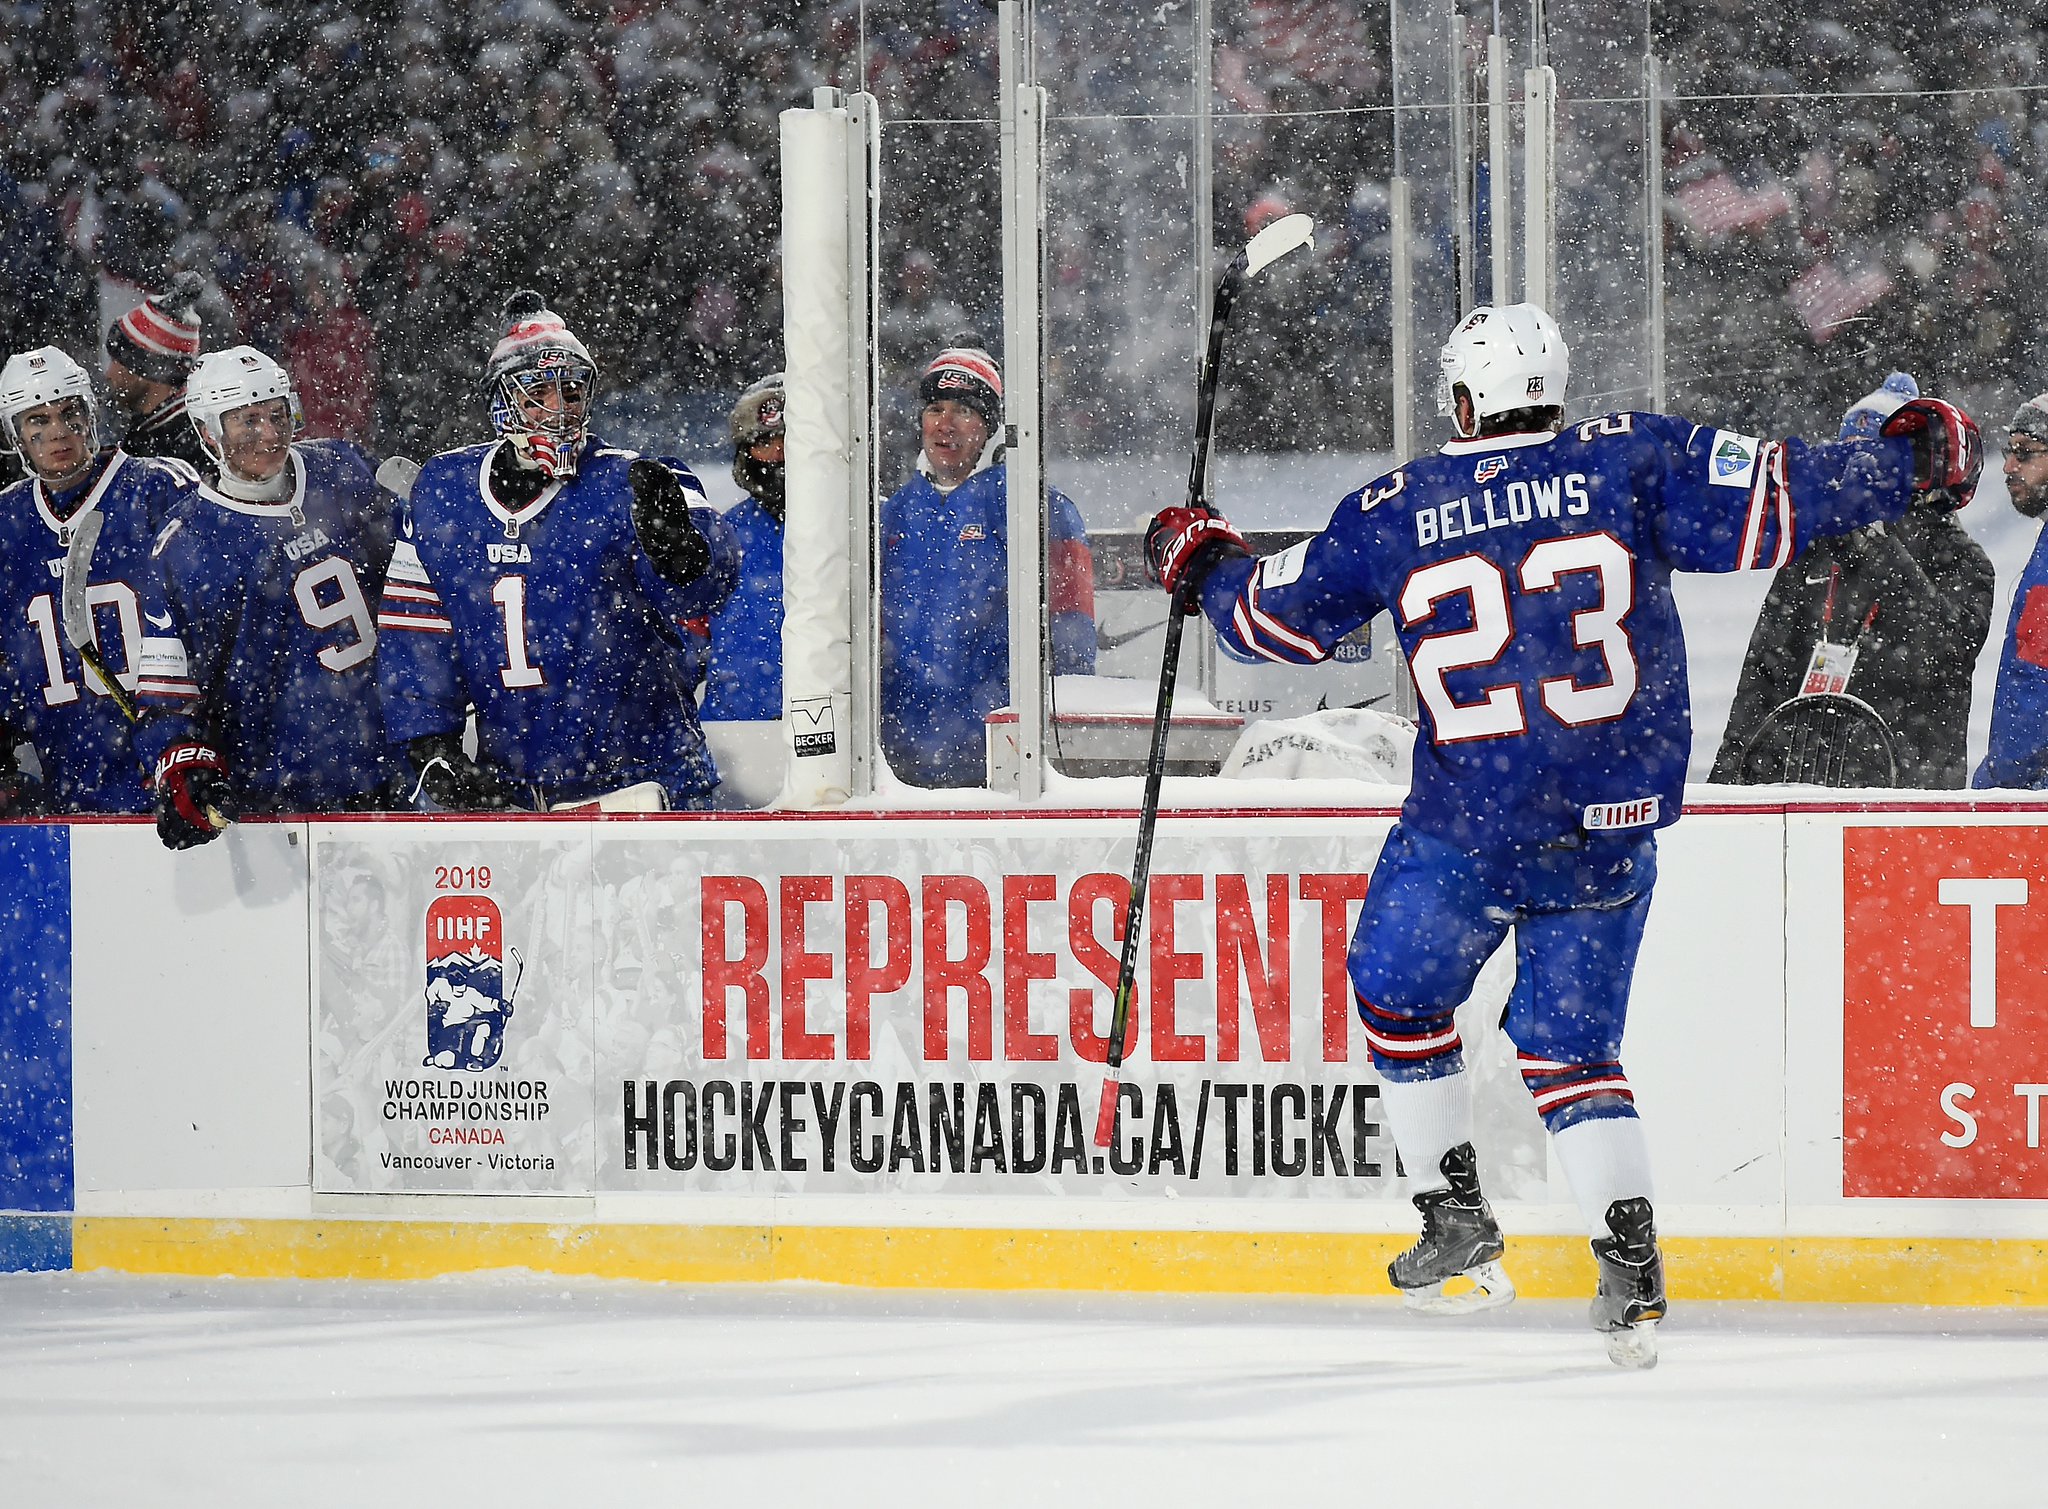 Ice Hockey Referee Group - NHL, USA Hockey, Hockey Canada, IIHF